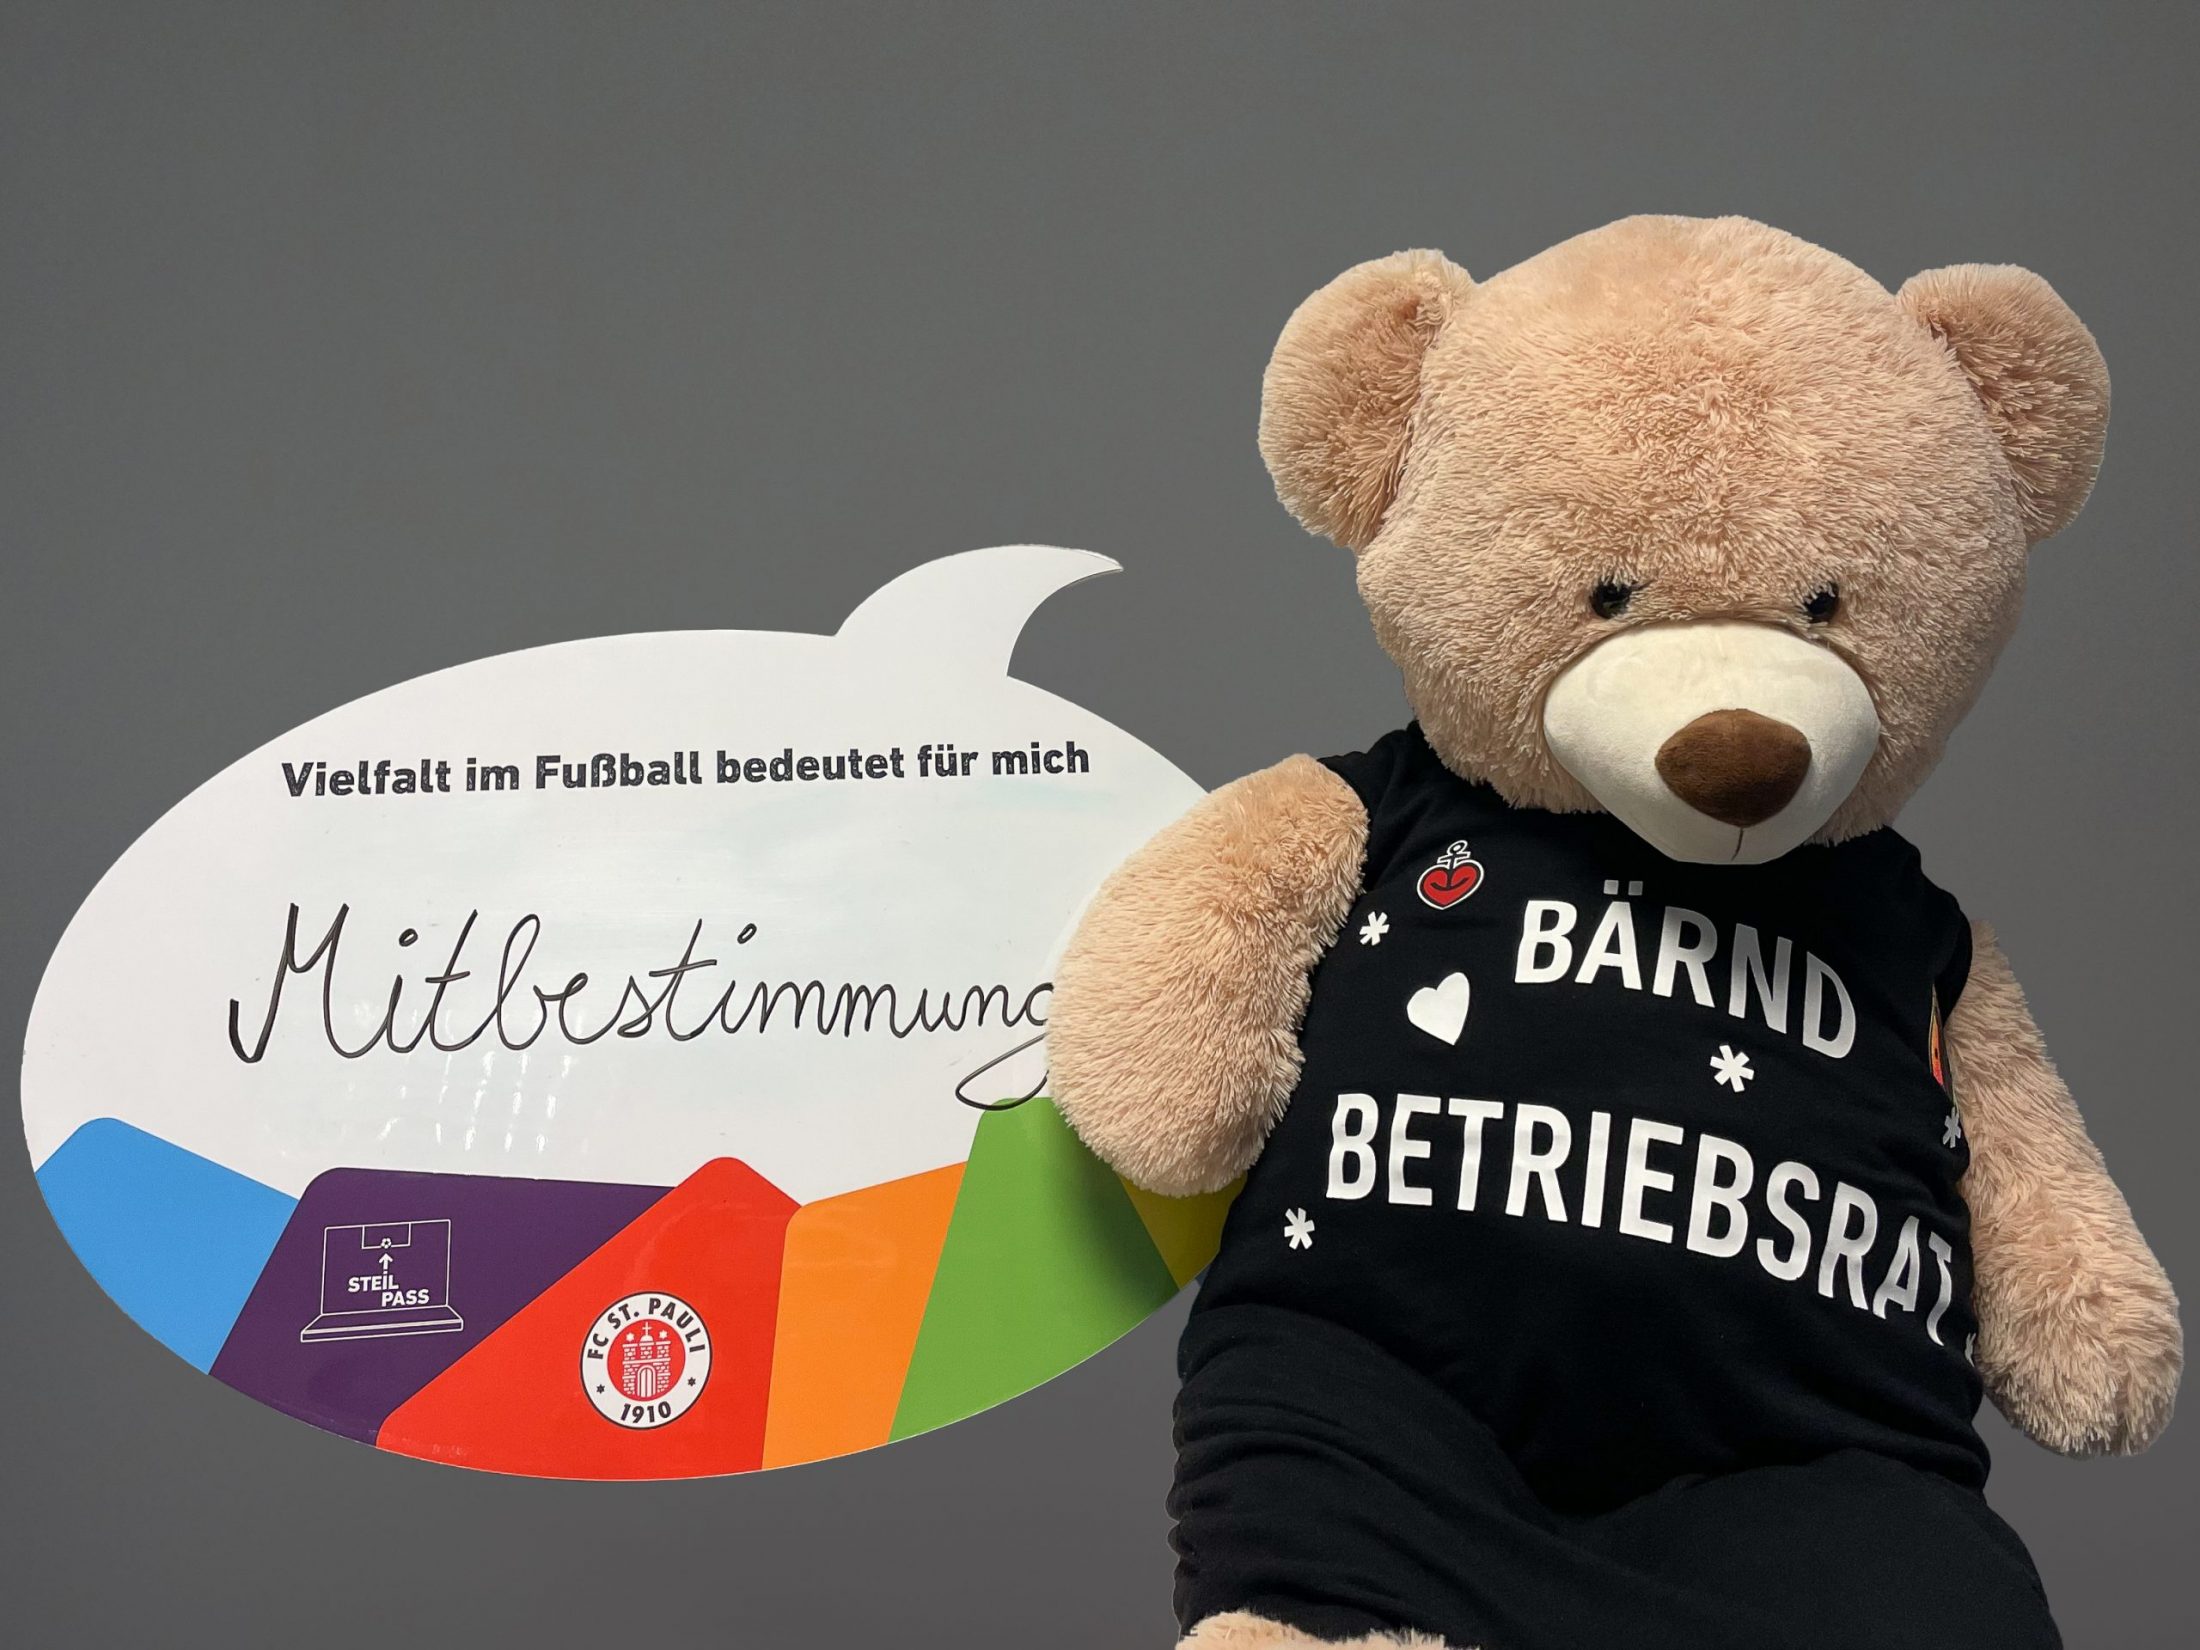 Kuscheltier in Form eines Bären mit „Bärndt Betriebsrat“-Shirt hält eine Sprechblasenschild hoch. "Vielfalt im Fußball bedeutet für mich, Mitbestimmung", steht darauf geschrieben.